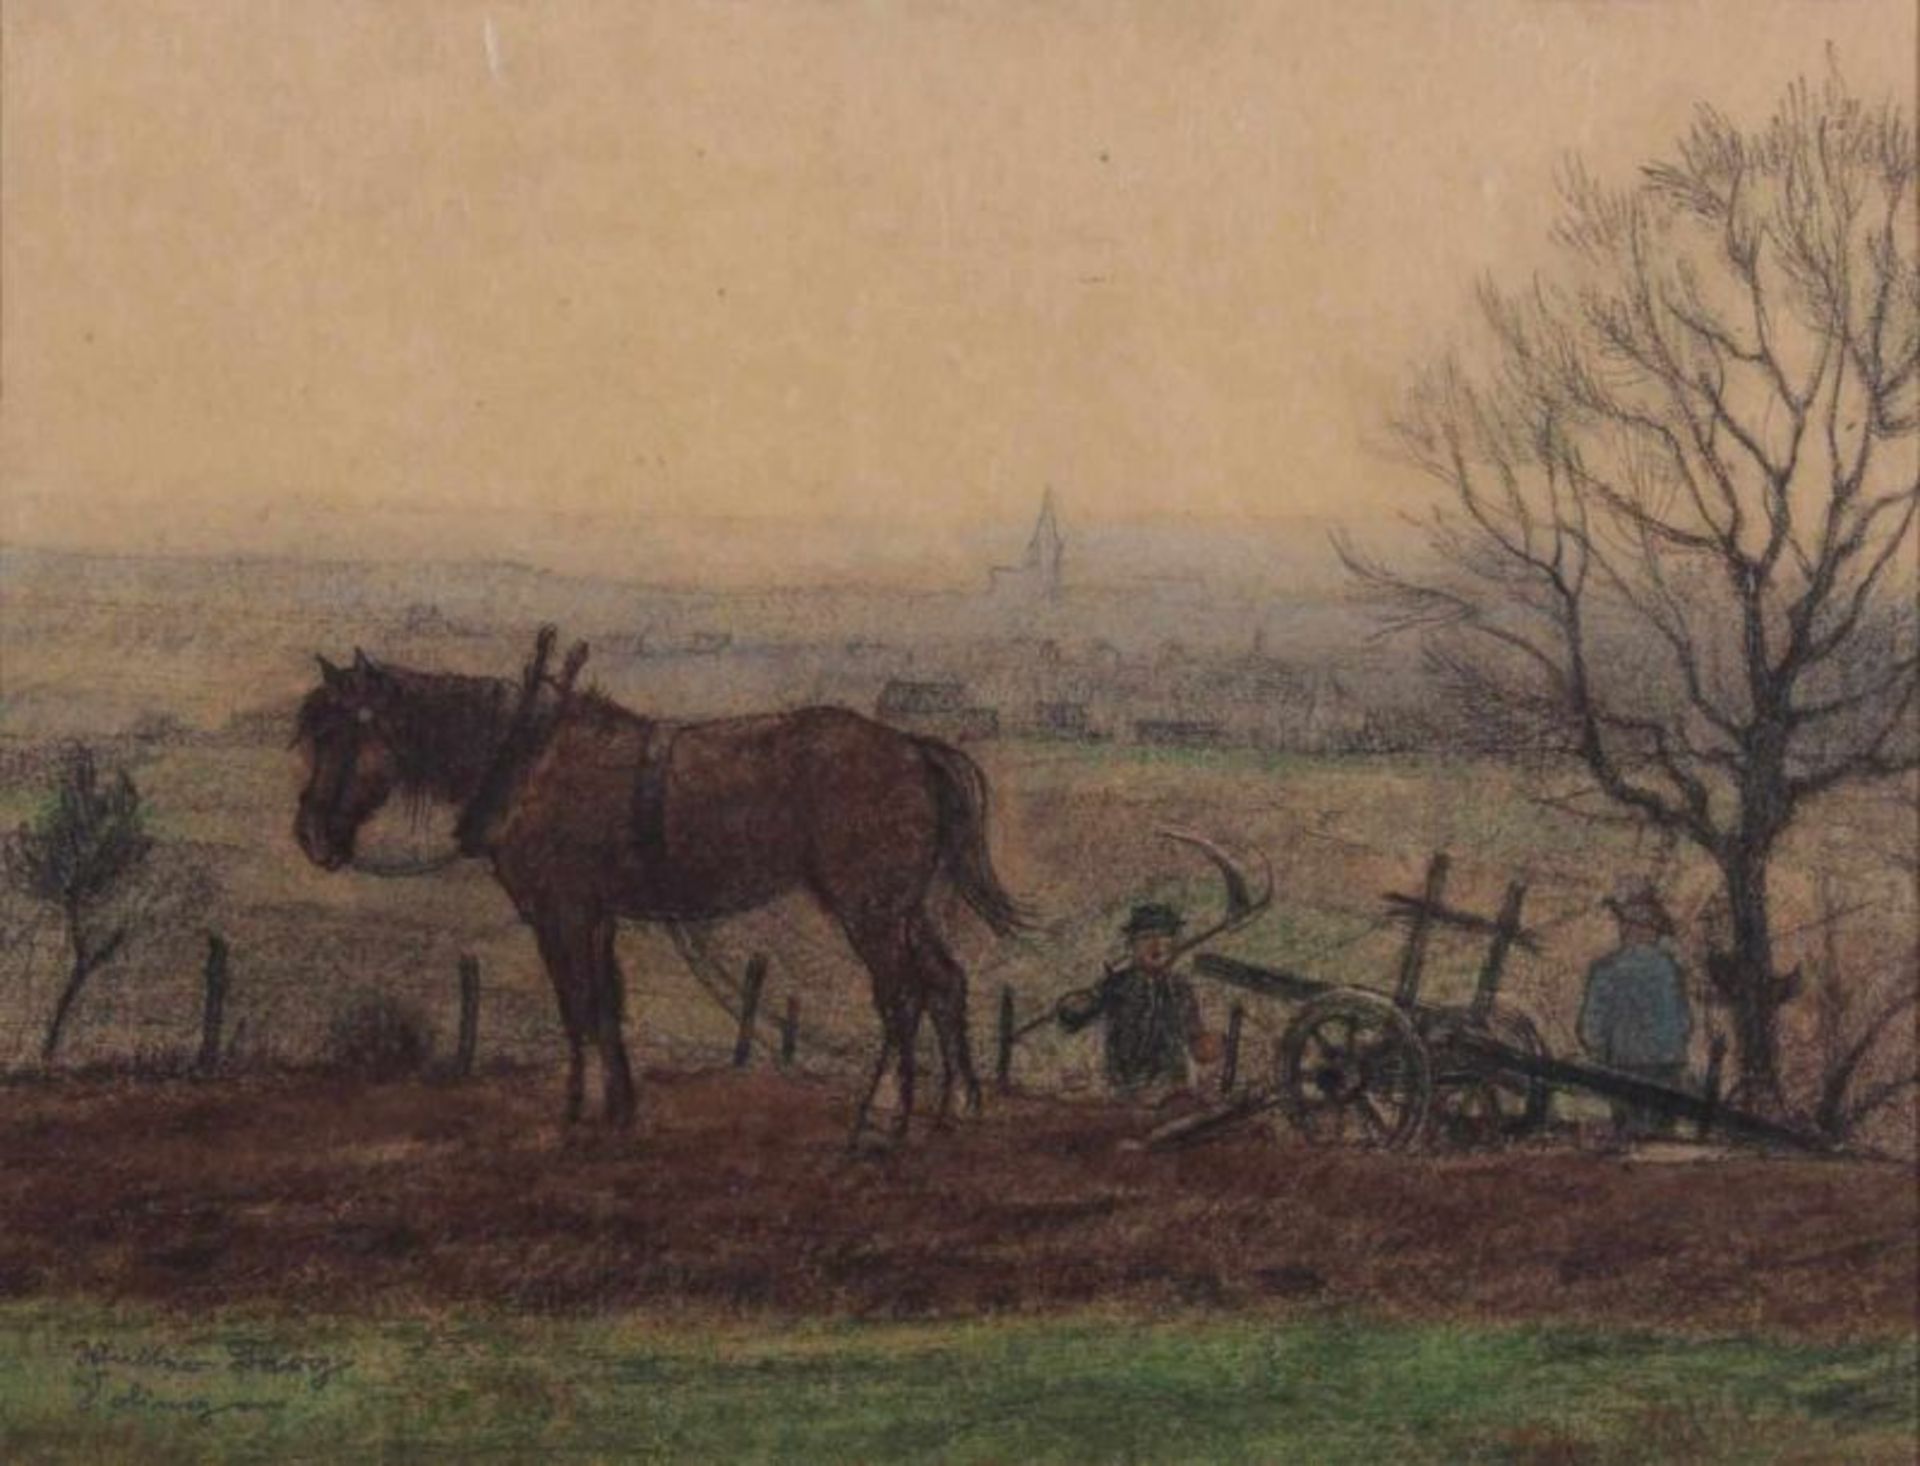 Berg, Walter (geb. 1906 Solingen, Stillleben- und Landschaftsmaler), Mischtechnik, "Bauern auf einer